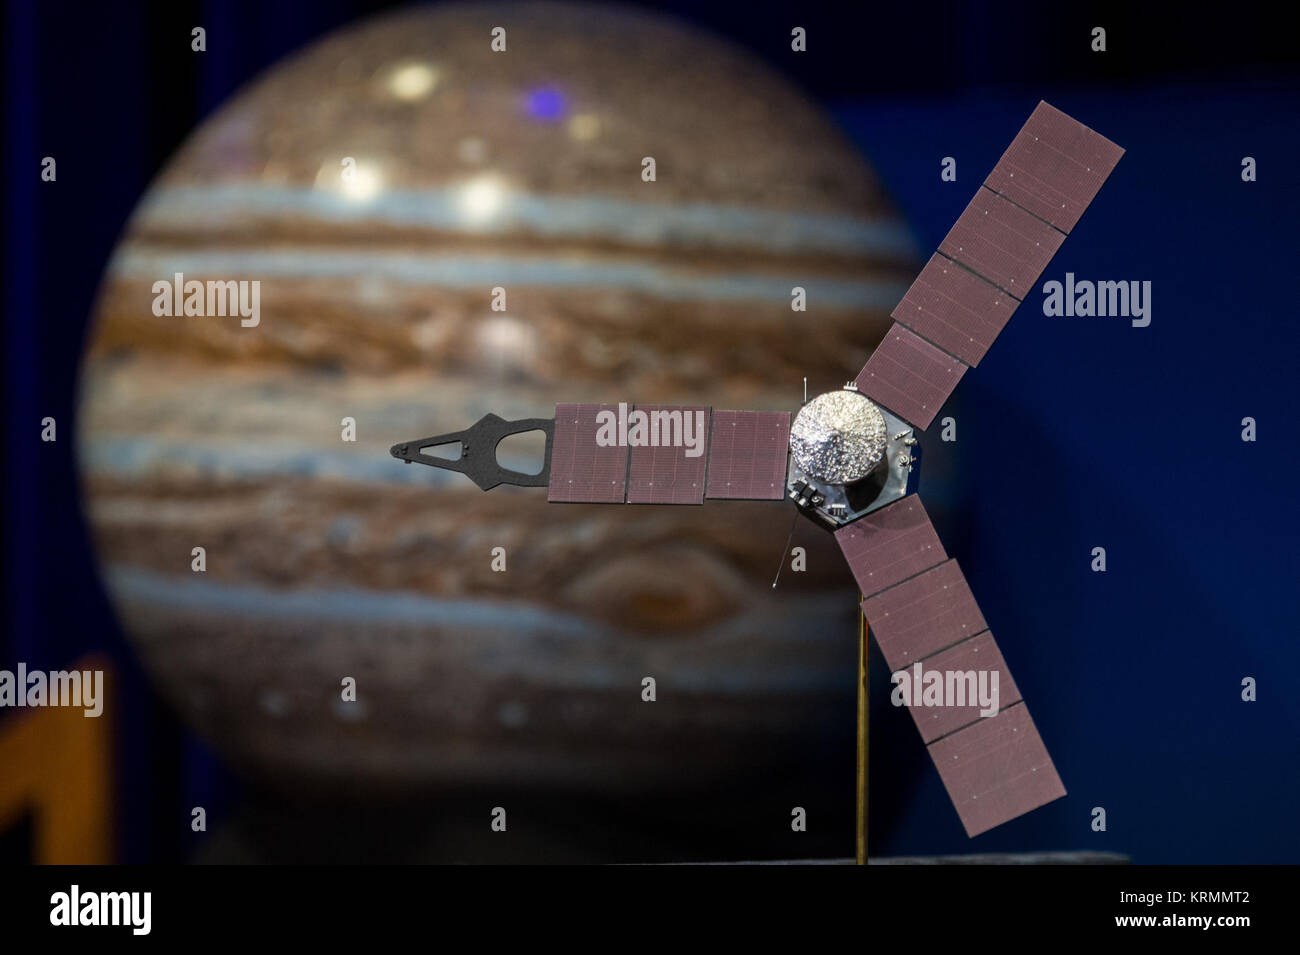 Un modelo de la nave espacial Juno es visto en una conferencia de prensa, celebrada antes de Juno entra en órbita alrededor de Júpiter, el jueves, 30 de junio de 2016 en el Laboratorio de Propulsión a Chorro (JPL) en Pasadena, CA. La misión de Juno lanzó el 5 de agosto de 2011, y llegará a Júpiter, el 4 de julio de 2016 a la órbita del planeta durante 20 meses y recopilar datos sobre el núcleo planetario, el mapa del campo magnético, y medir la cantidad de agua y amoníaco en la atmósfera. Crédito de la foto: (NASA/Aubrey Gemignani) Juno órbita alrededor de Júpiter Foto de stock